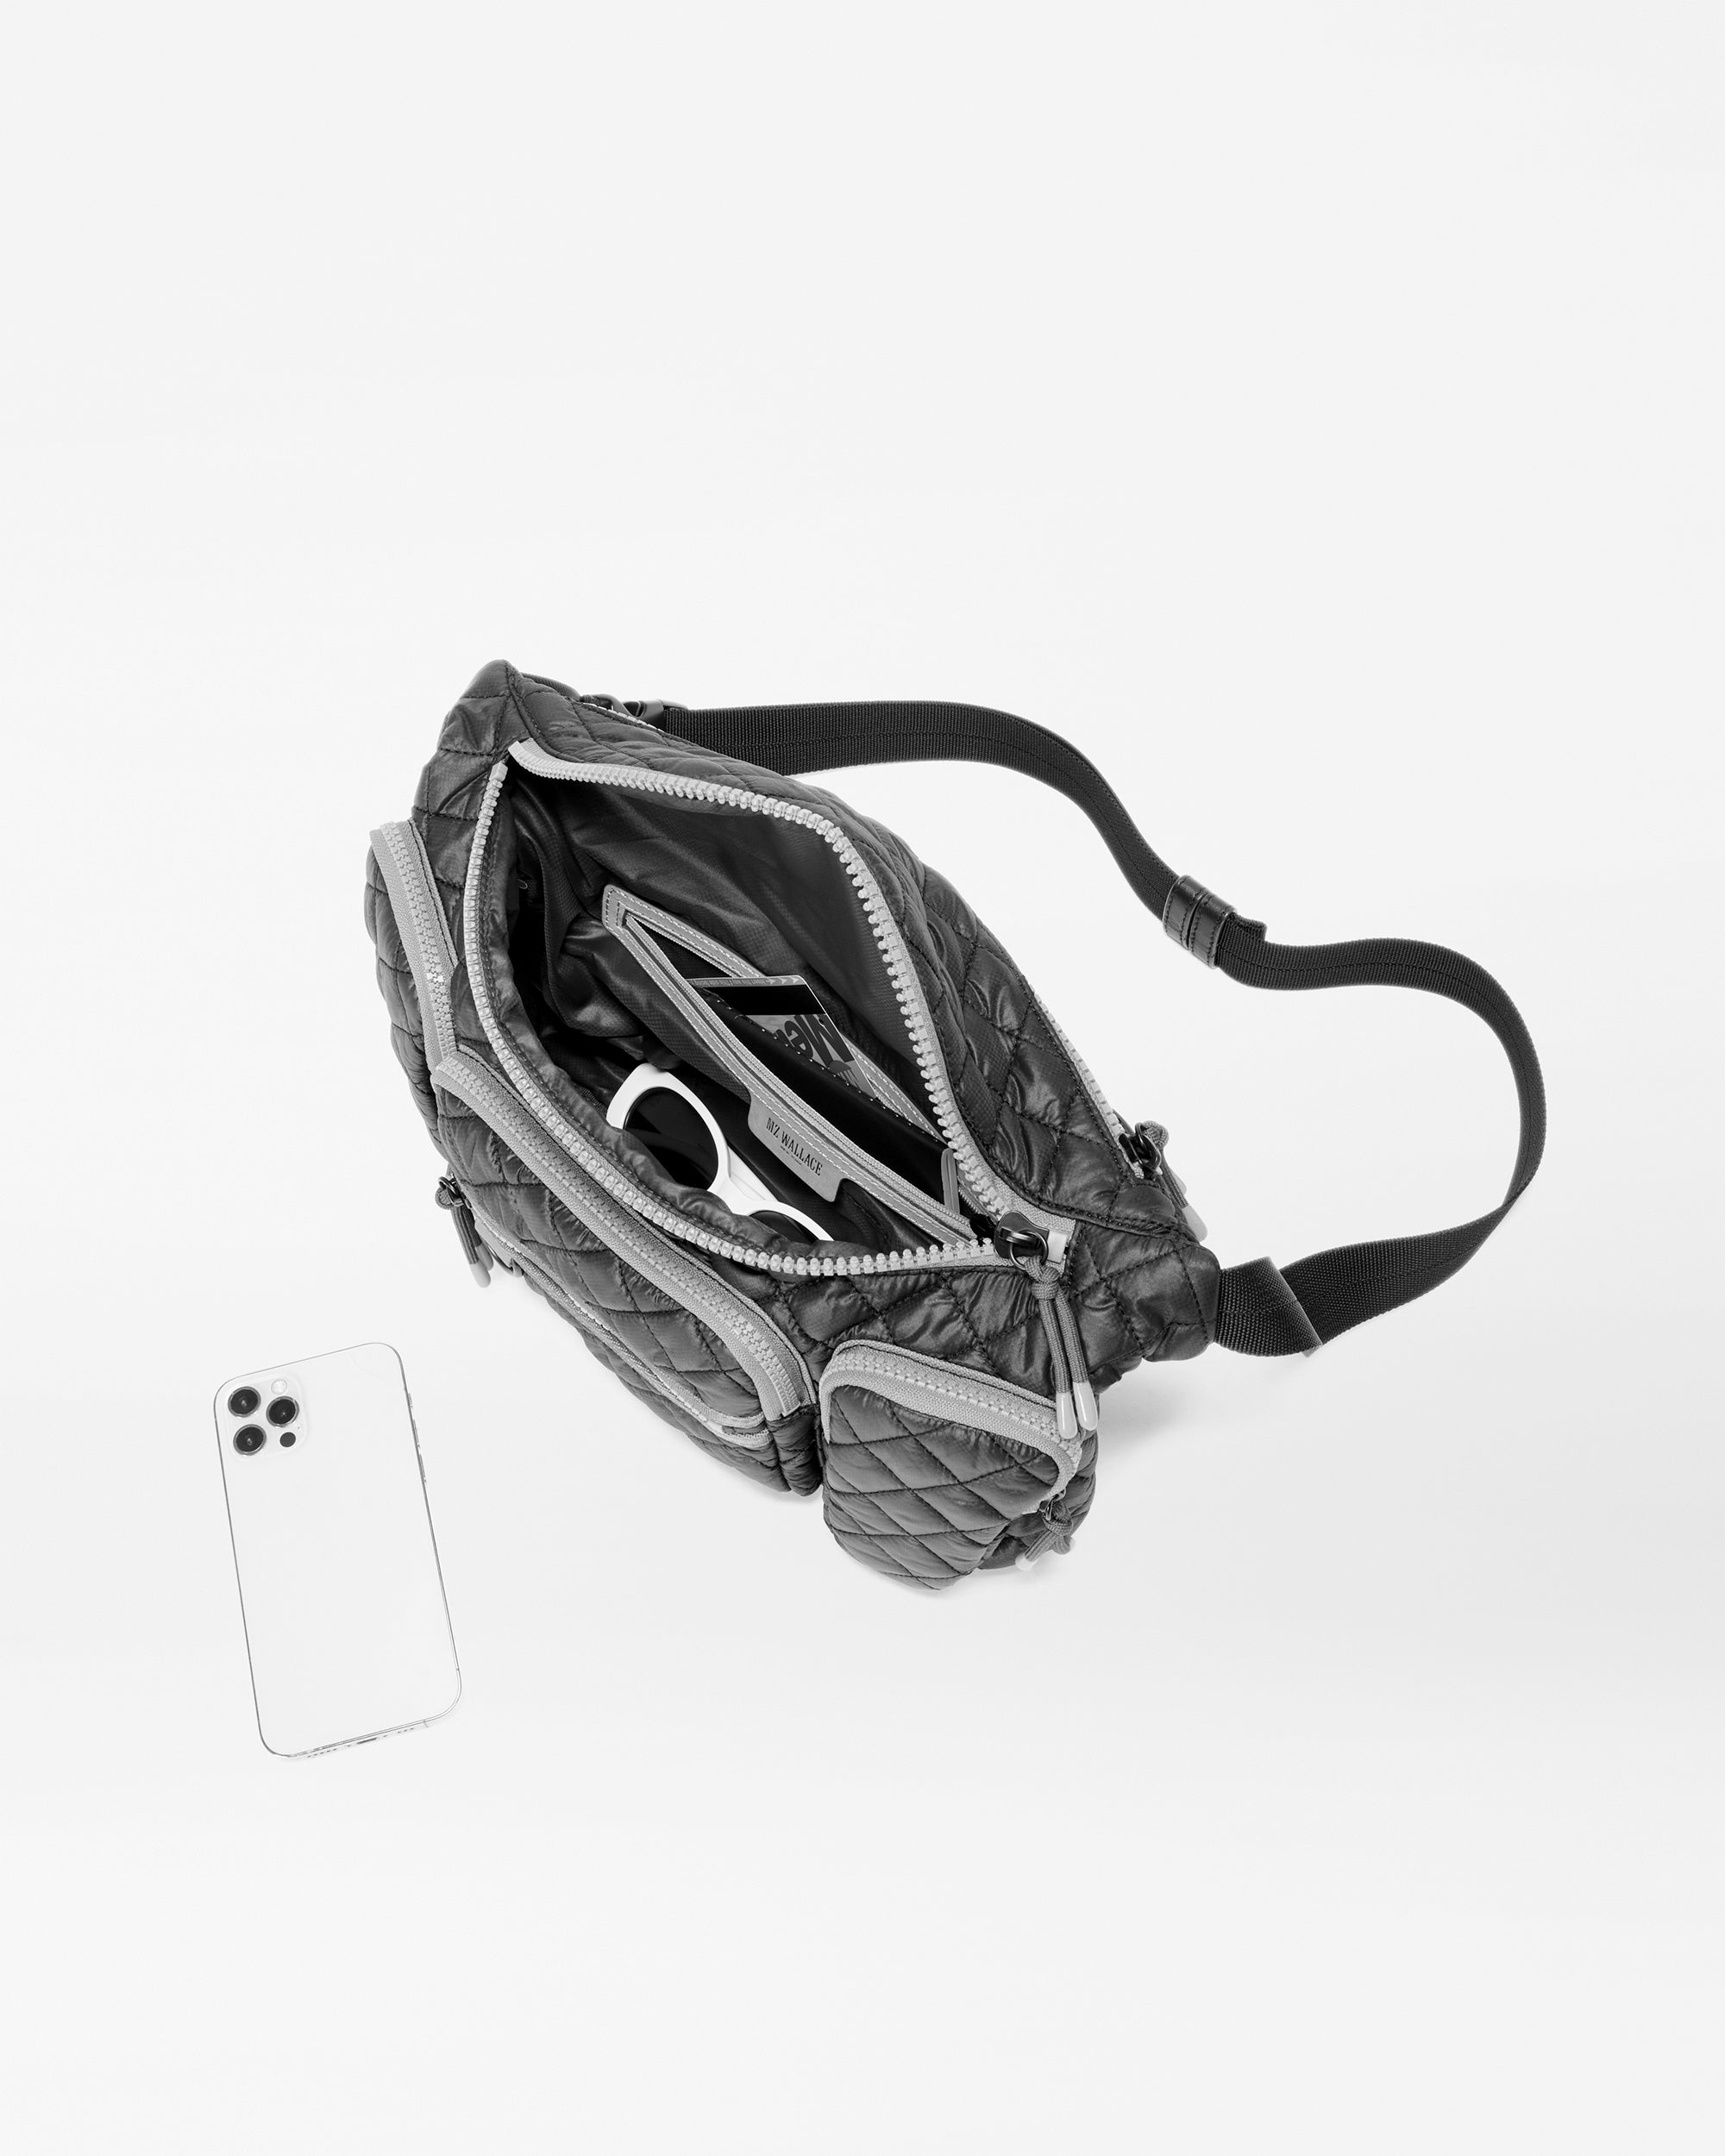 SHAMRIZ Women Sling Bag With Adjustable strap | handbag | purse |Side Sling  bag | Tassel Sling Bag (Pink) : Amazon.in: Fashion